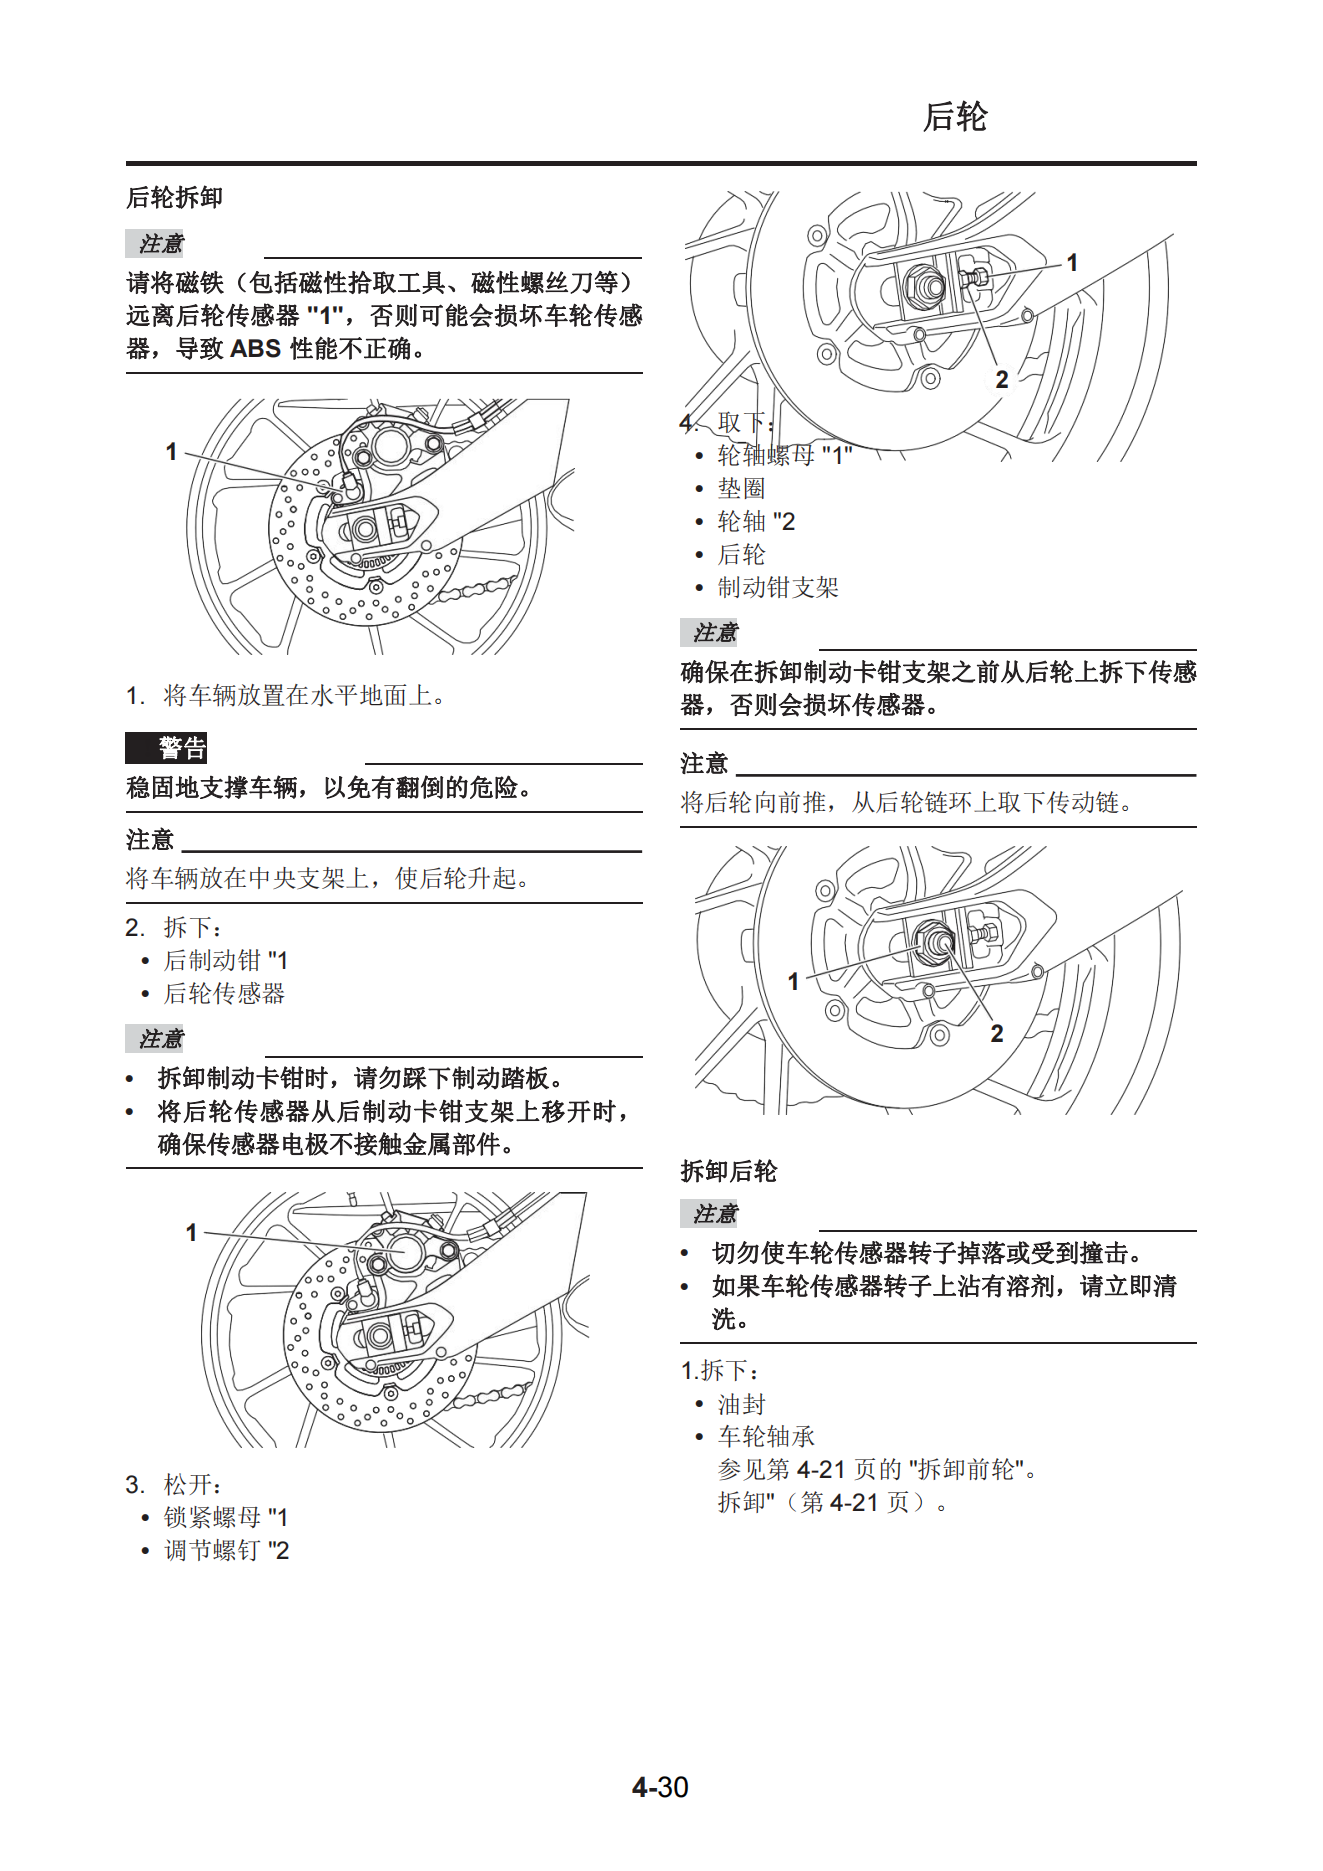 简体中文2019-2020年雅马哈tracer900GT维修手册插图3